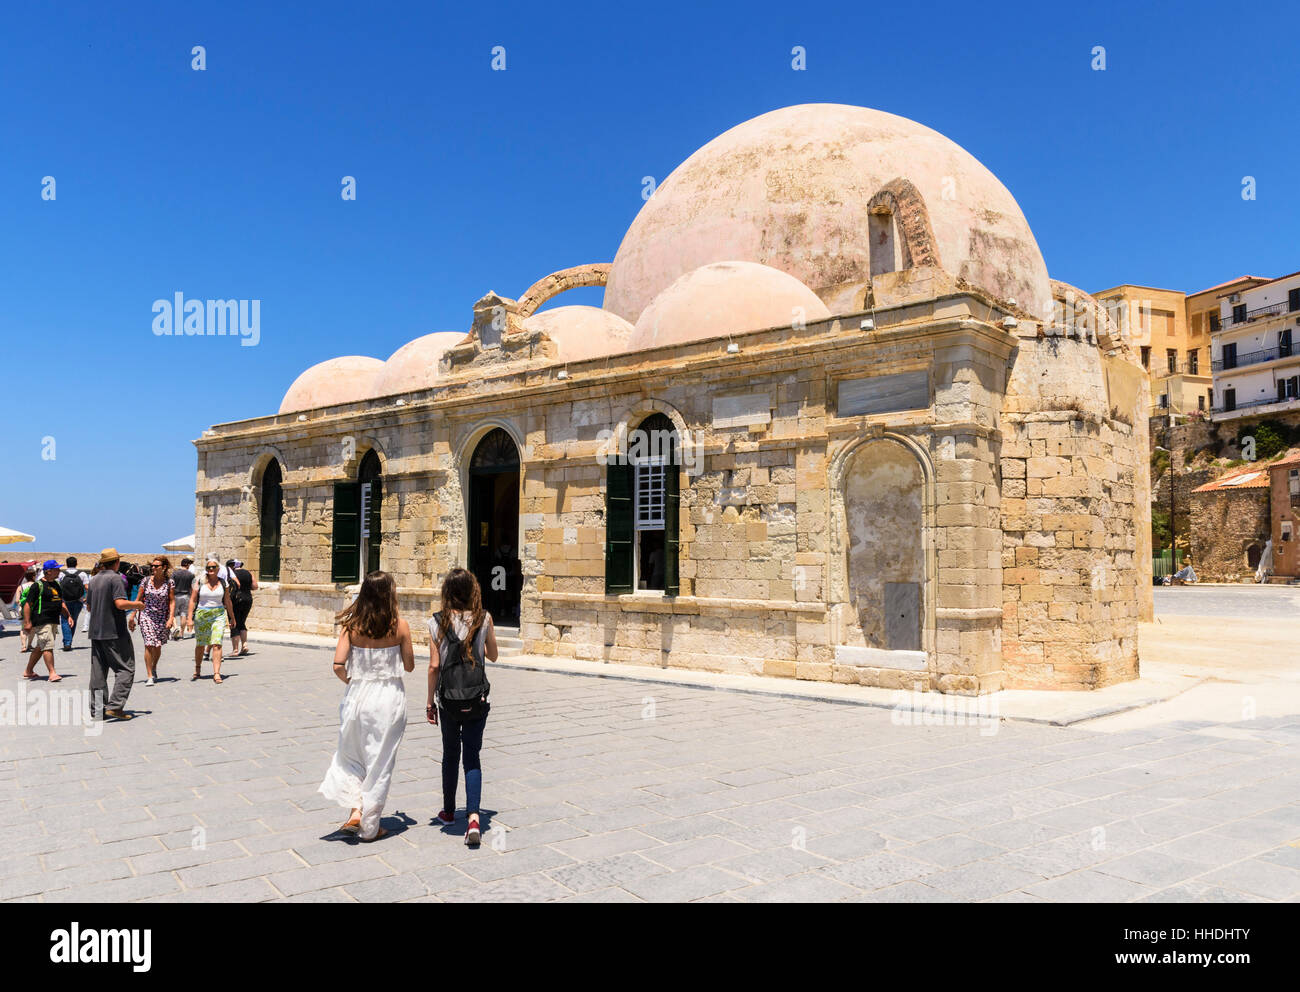 Chania gewölbte Moschee der Janitscharen in den alten venezianischen Hafen von Chania, Kreta, Griechenland Stockfoto